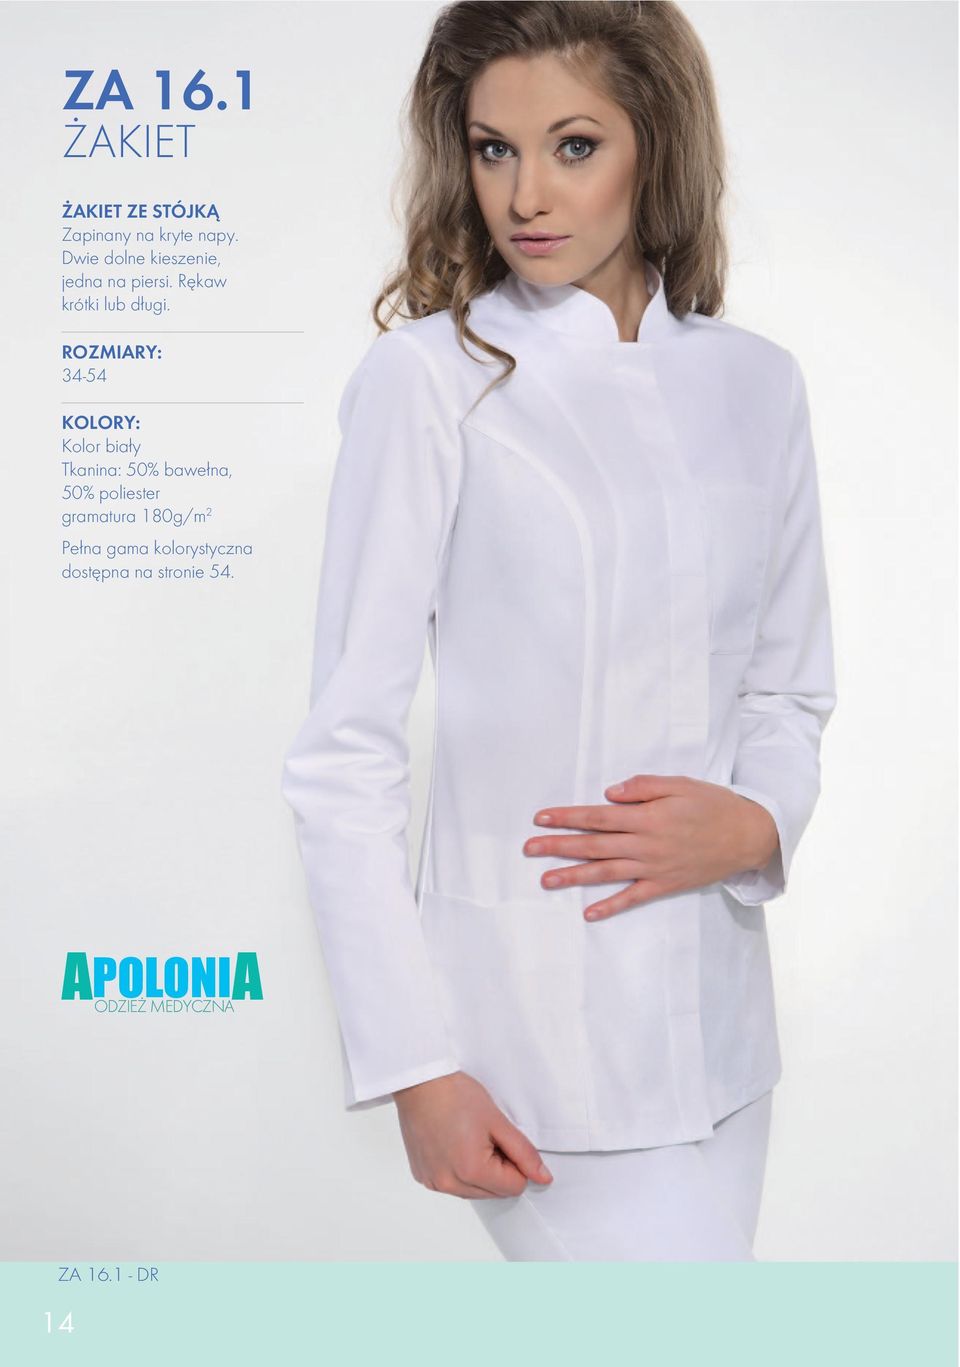 ODZIEŻ MEDYCZNA APOLONIA. APOLONIA - odzież medyczna i kosmetyczna, obuwie  medyczne - PDF Darmowe pobieranie